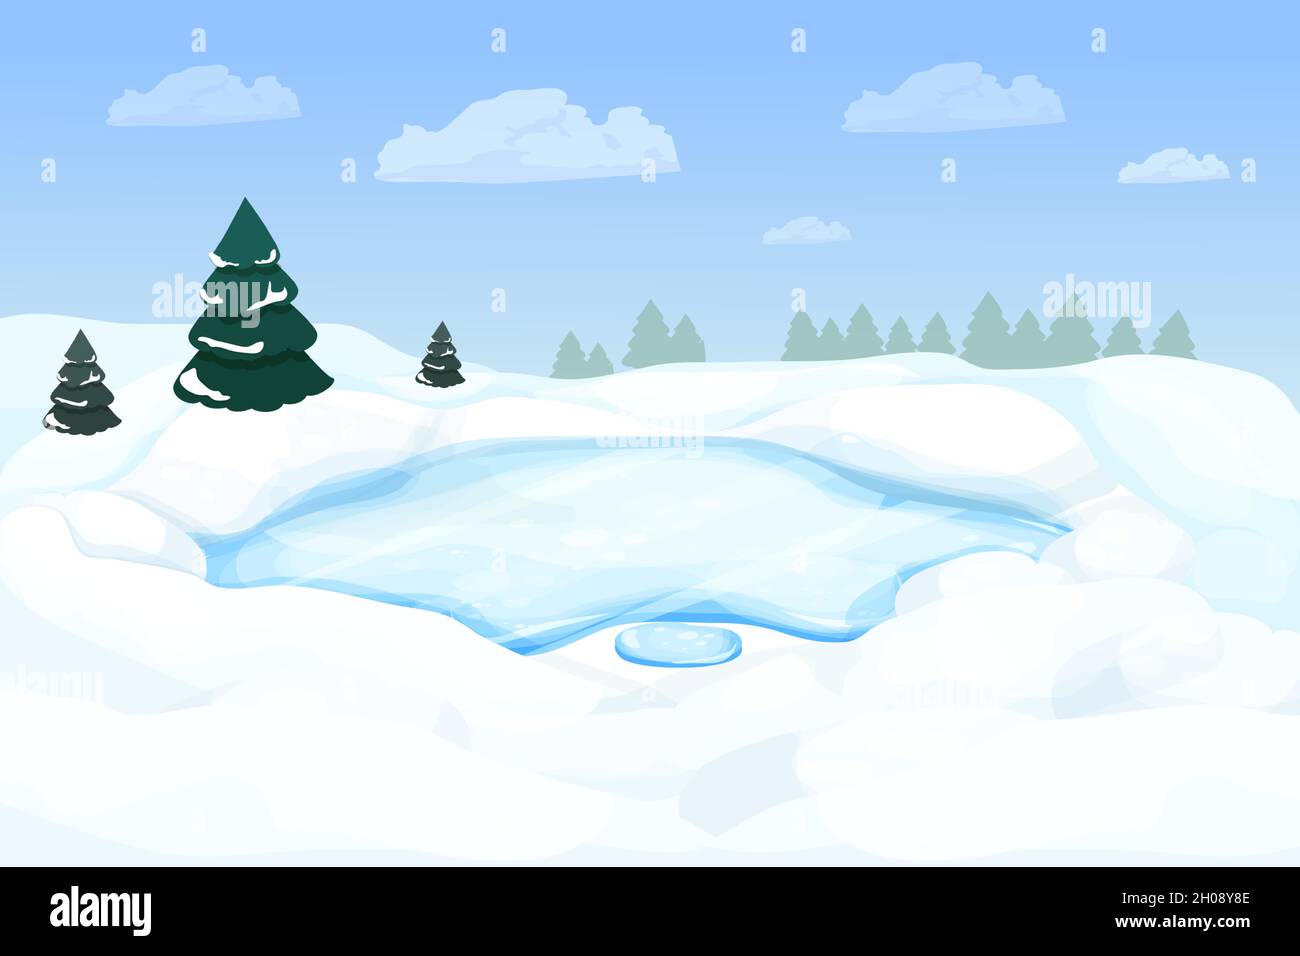 Paysage d'hiver avec lac gelé, rivière en forêt avec neige et pins dans le style de dessin animé.Scène enneigée.L'hiver, nature sauvage et sauvage.Illustration vectorielle Illustration de Vecteur